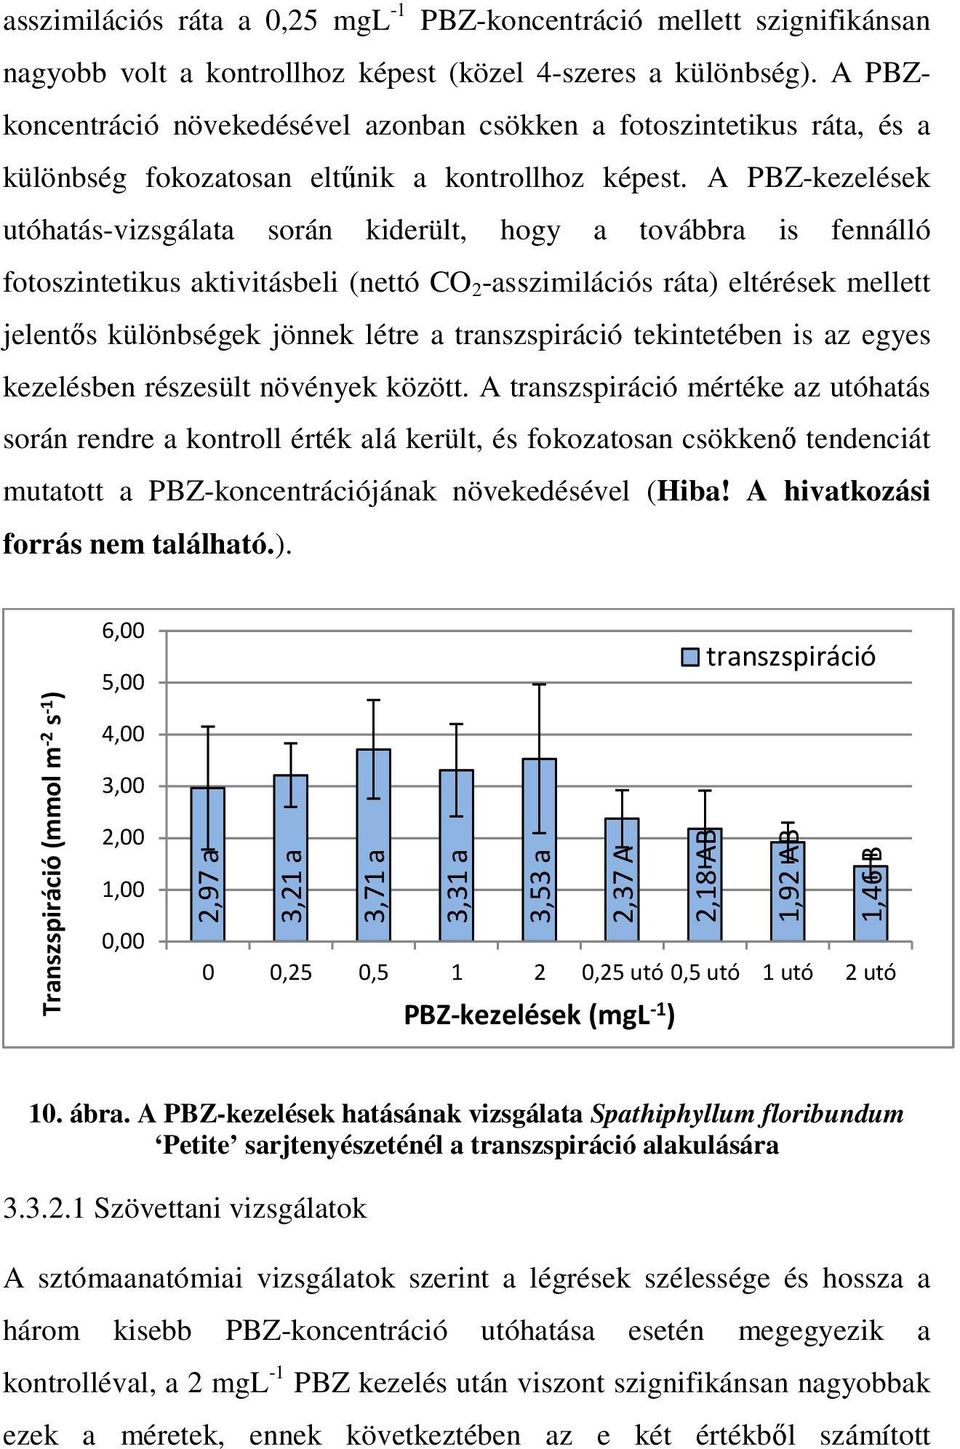 A PBZ-kezelések utóhatás-vizsgálata során kiderült, hogy a továbbra is fennálló fotoszintetikus aktivitásbeli (nettó CO 2 -asszimilációs ráta) eltérések mellett jelentıs különbségek jönnek létre a